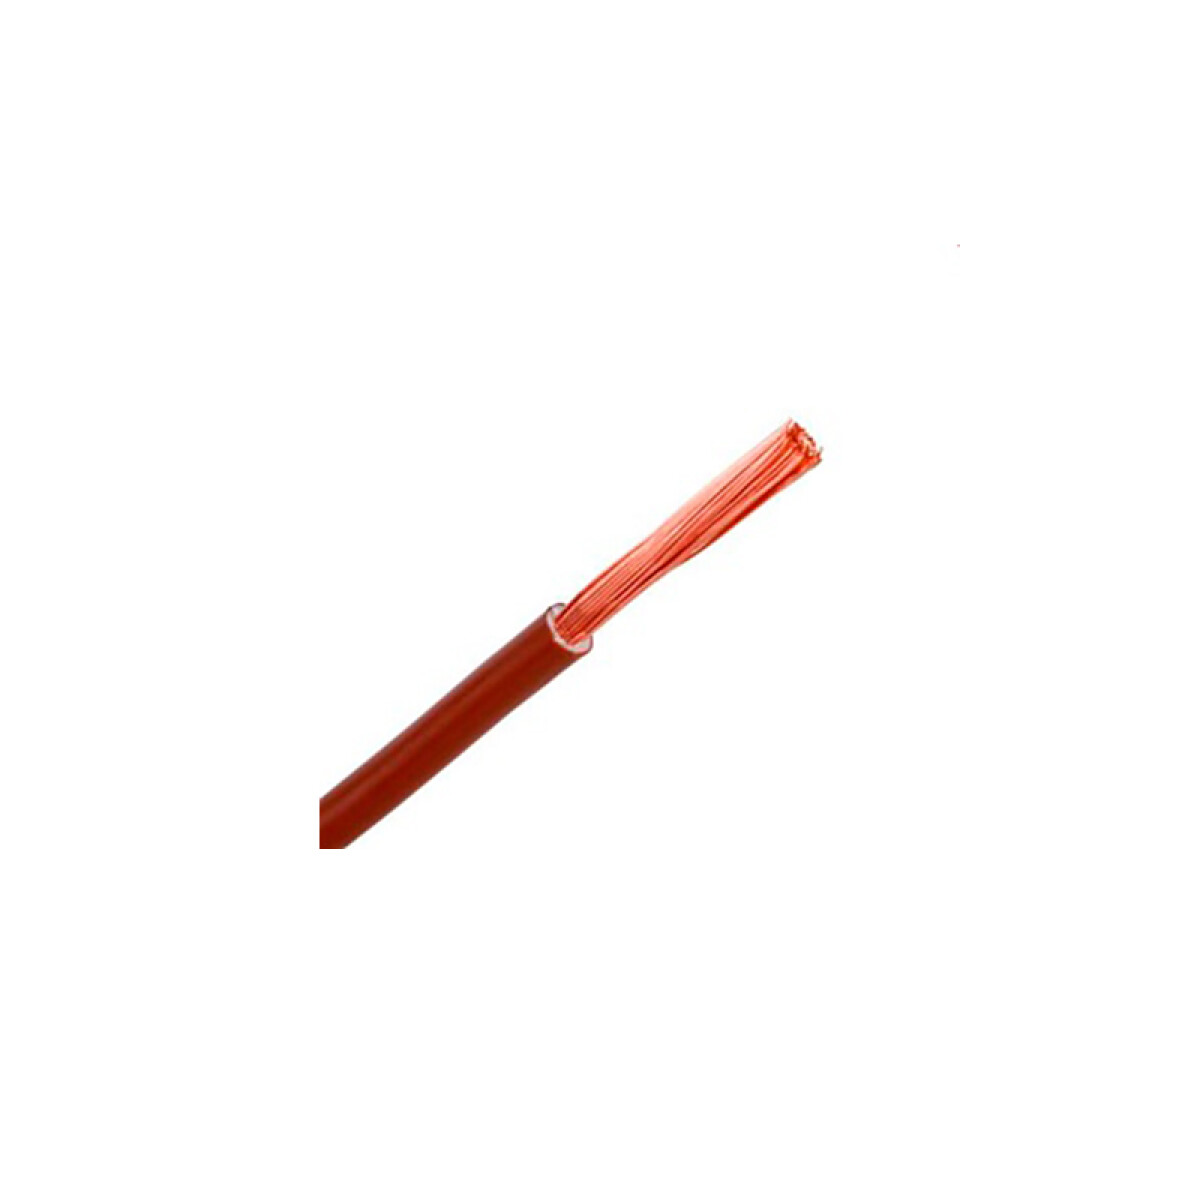 Cable de cobre flex. 1,50mm² marrón - Rollo 100mt - C94322 